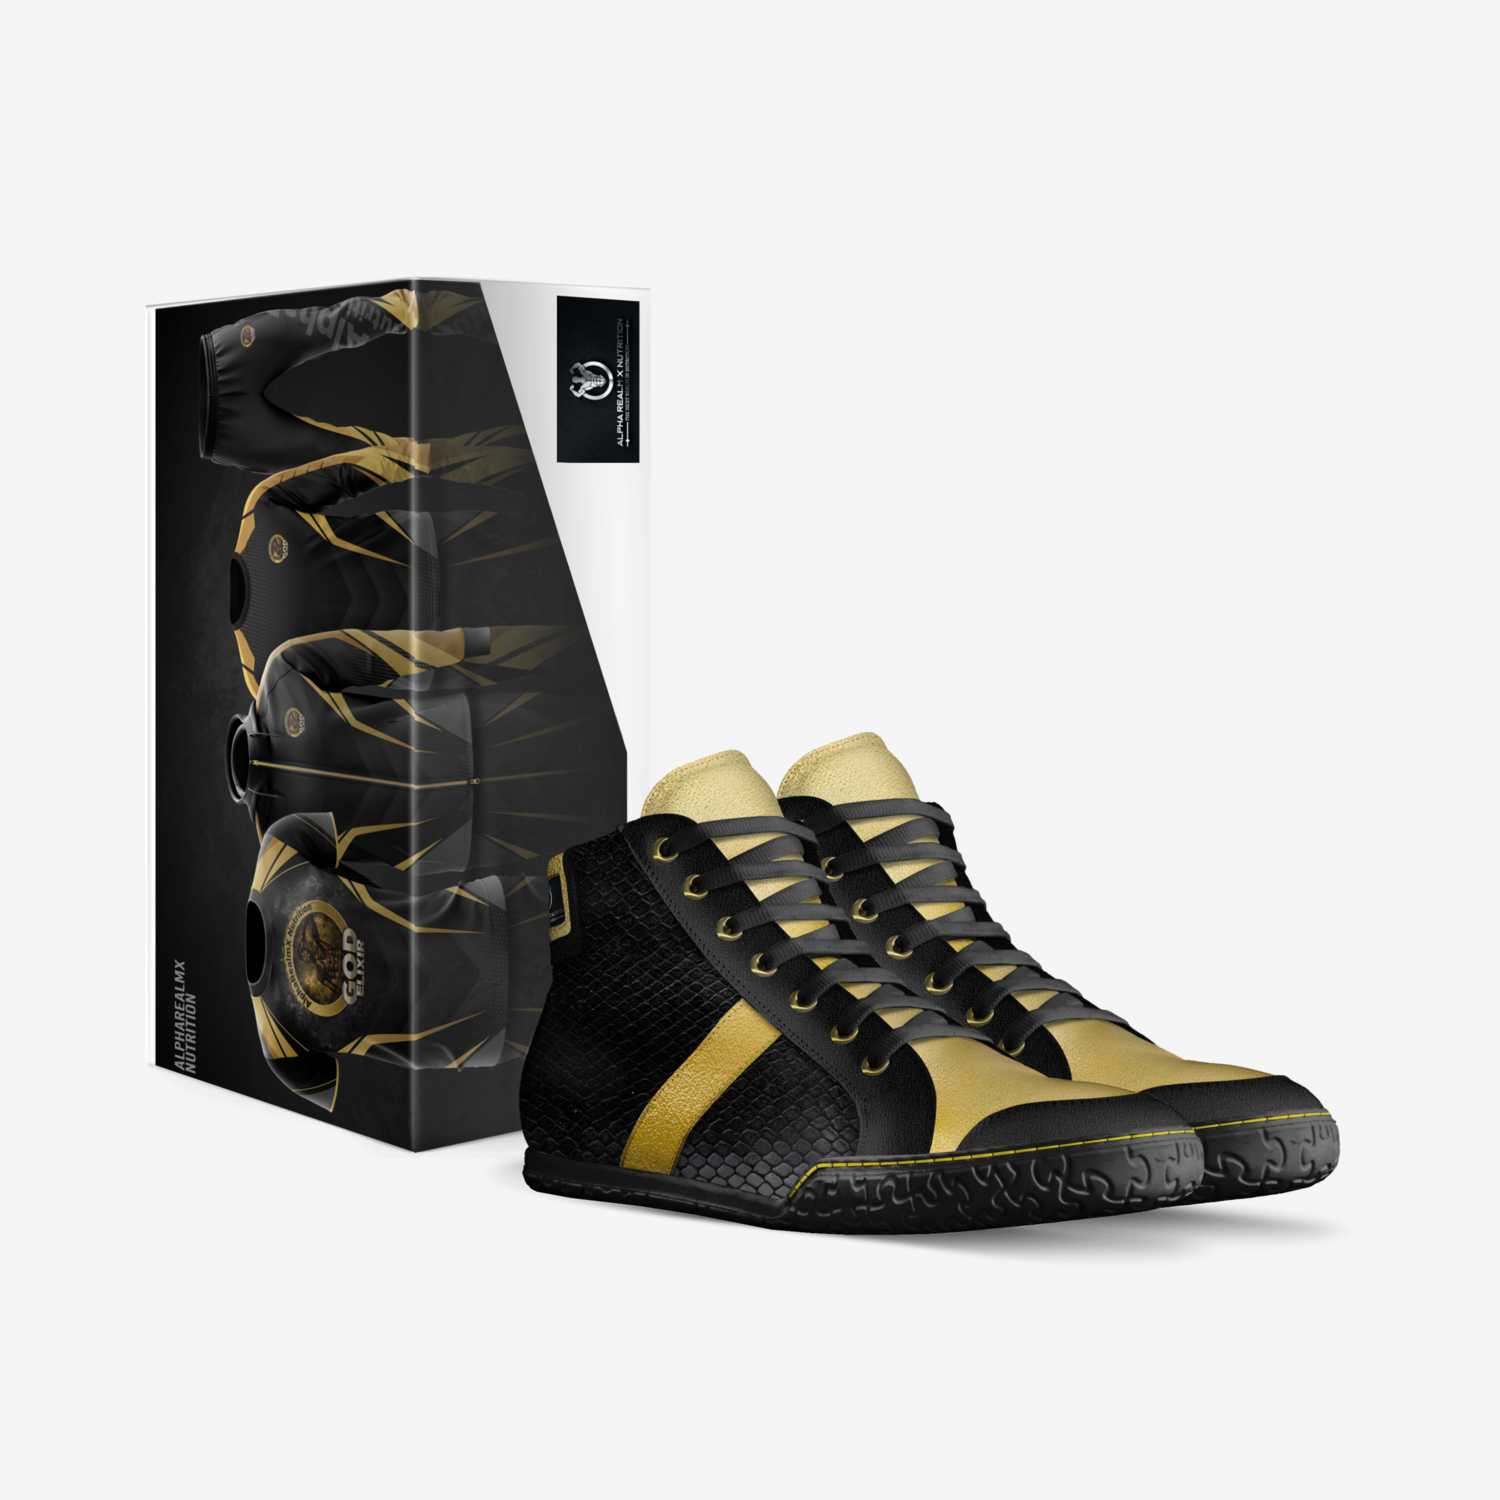 AReX: RealmWalker custom made in Italy shoes by Ëűženphõric Êlíxïř | Box view